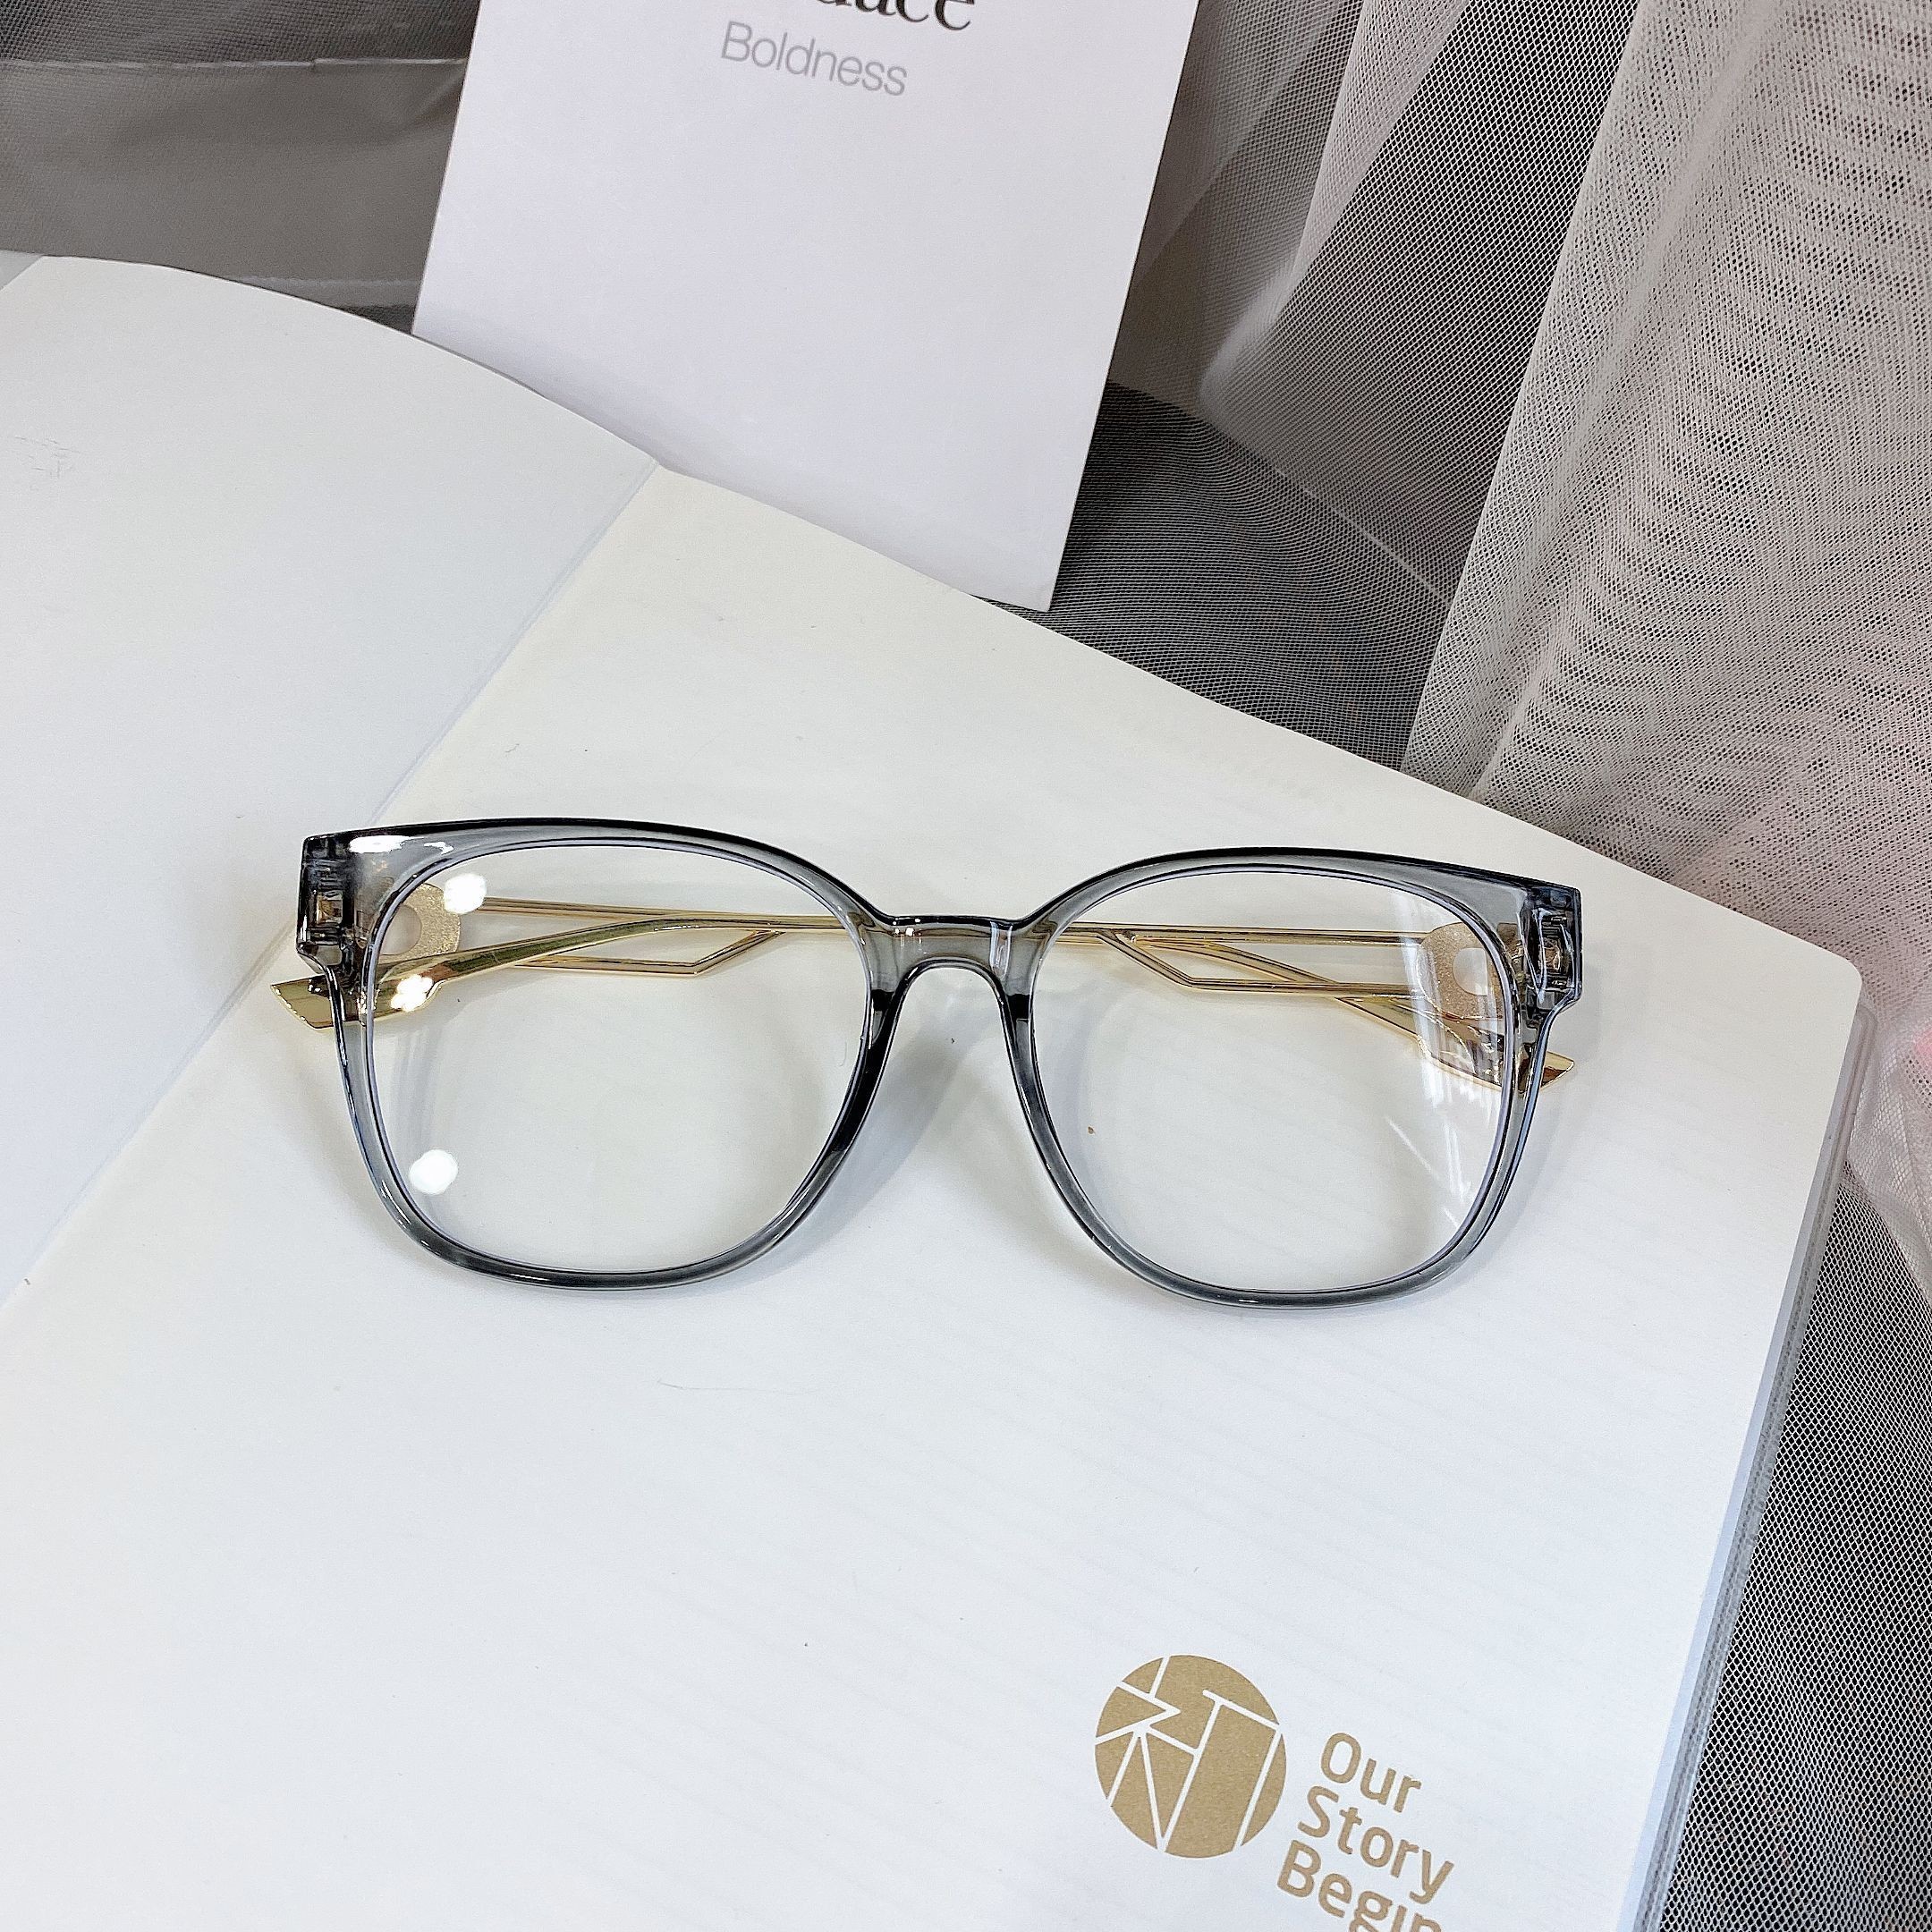 时尚新款平光镜仿眼镜框批发 大框学生眼镜架厂家直销详情图9